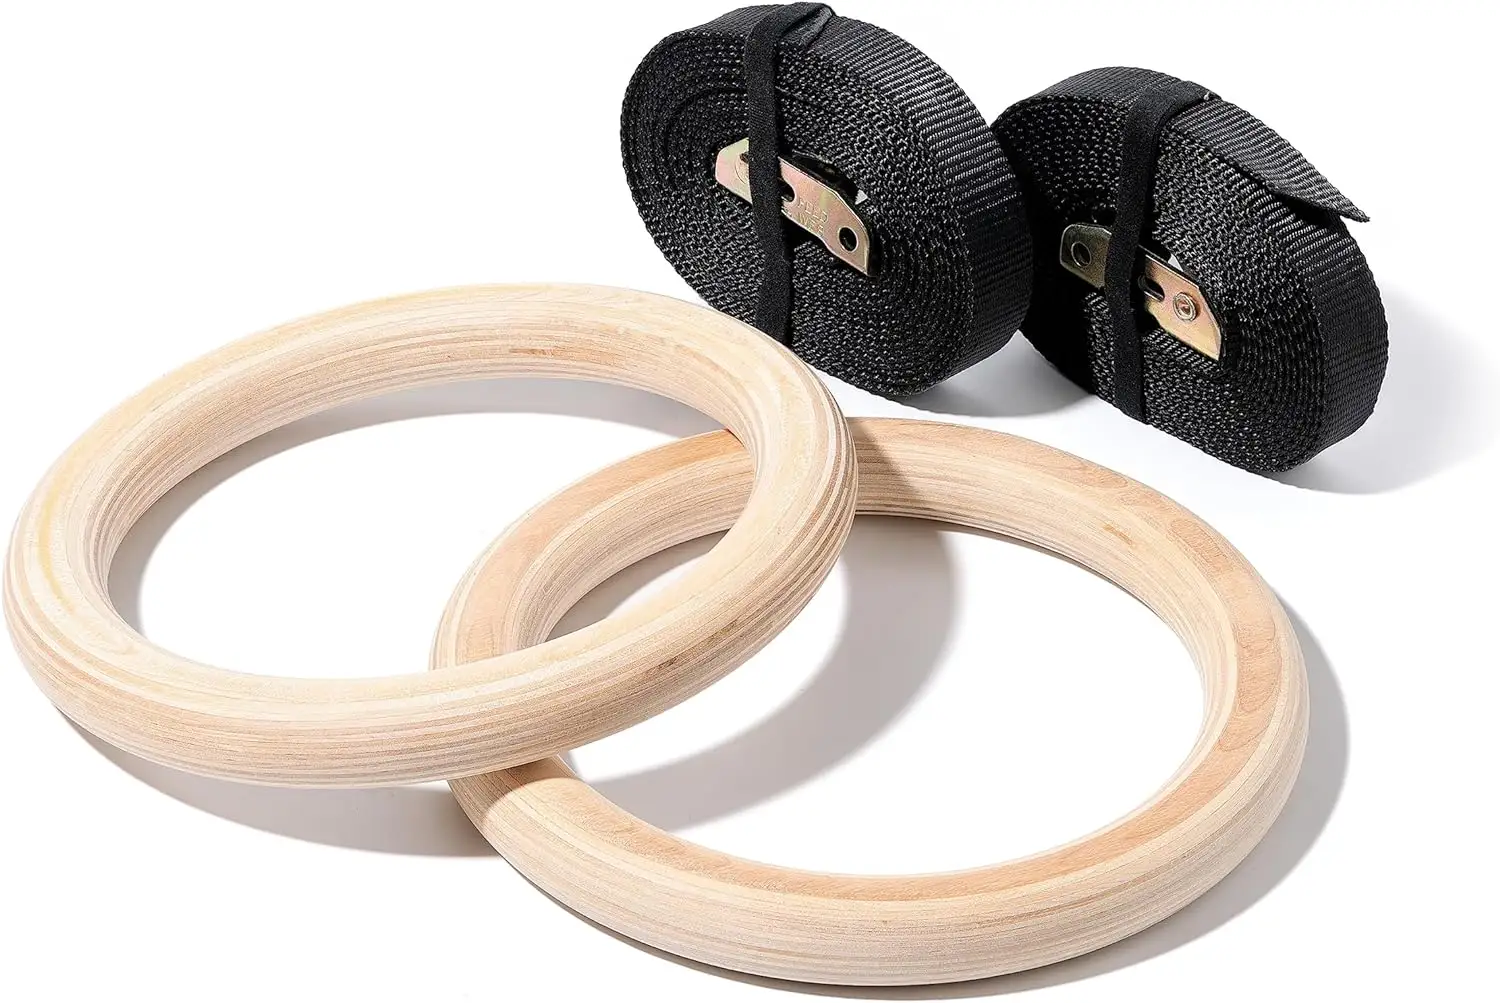 Anello di allenamento Fitness forza calisthenics anello di ginnastica in legno 28mm 32mm anello di allenamento sportivo cross fitness